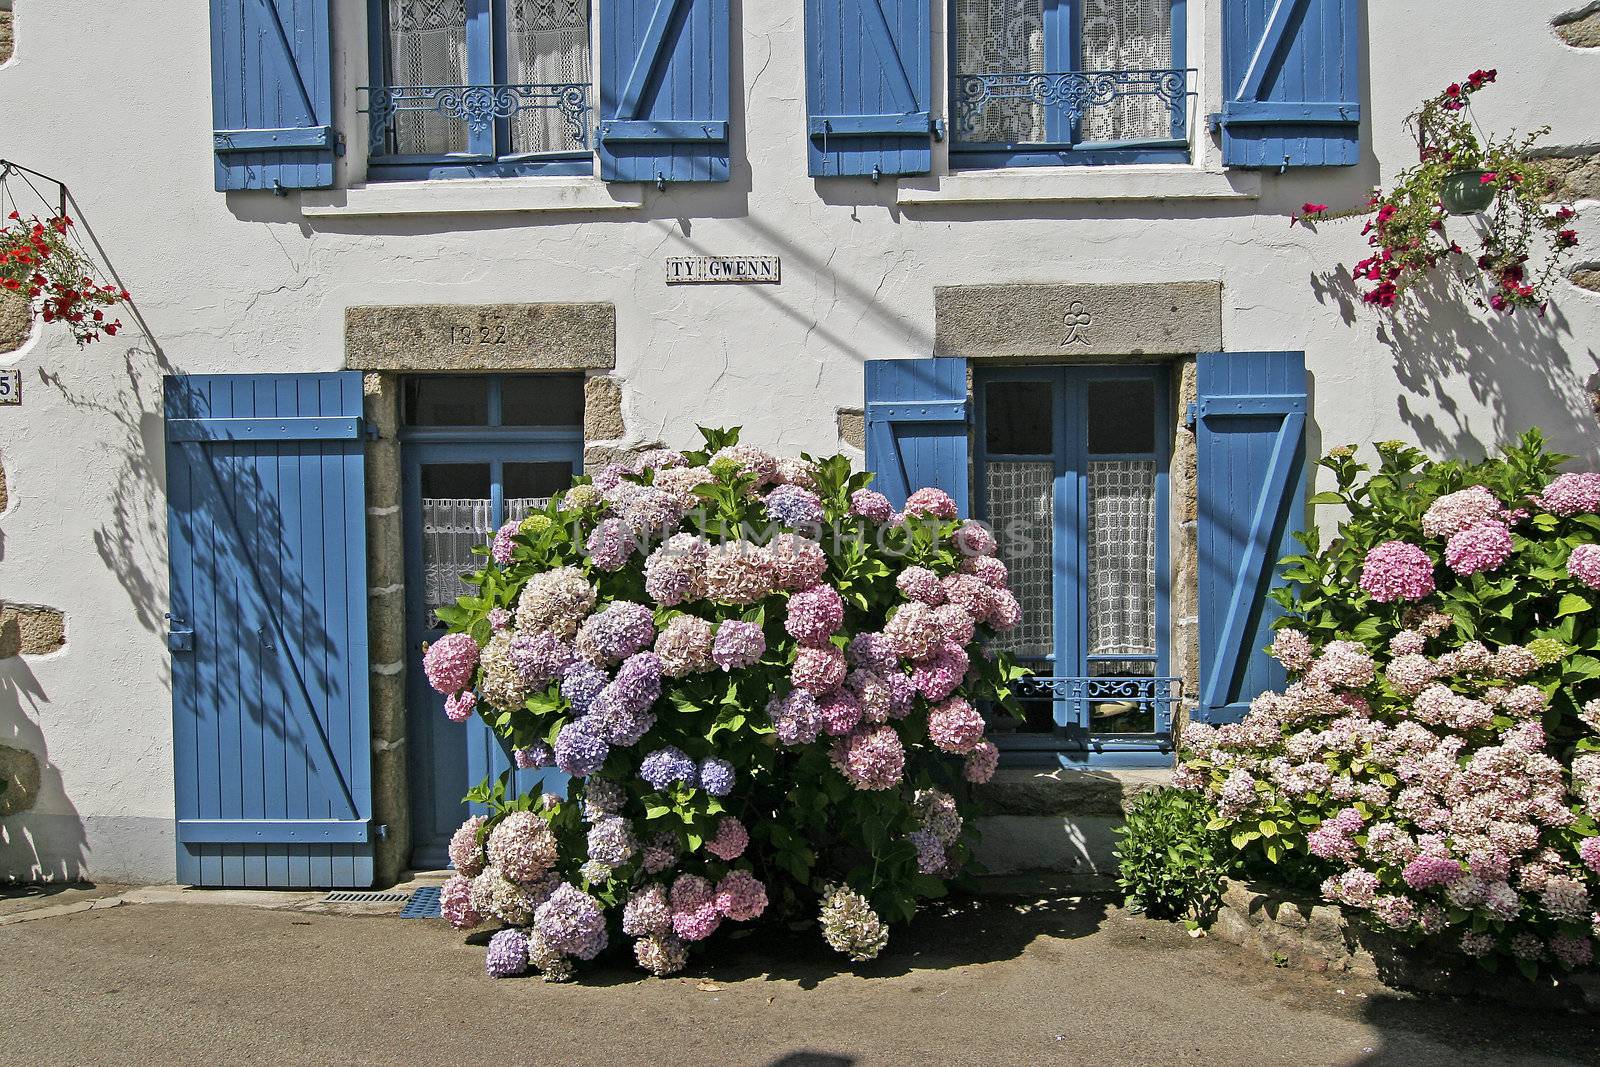 Bretonic house with flowers, Hydrangea, near Ploutharnel, Brittany, North France.
Plouharnel, bretonisches Haus, Haus mit Blumen, Hortensien, Hydrangea, Hortensie